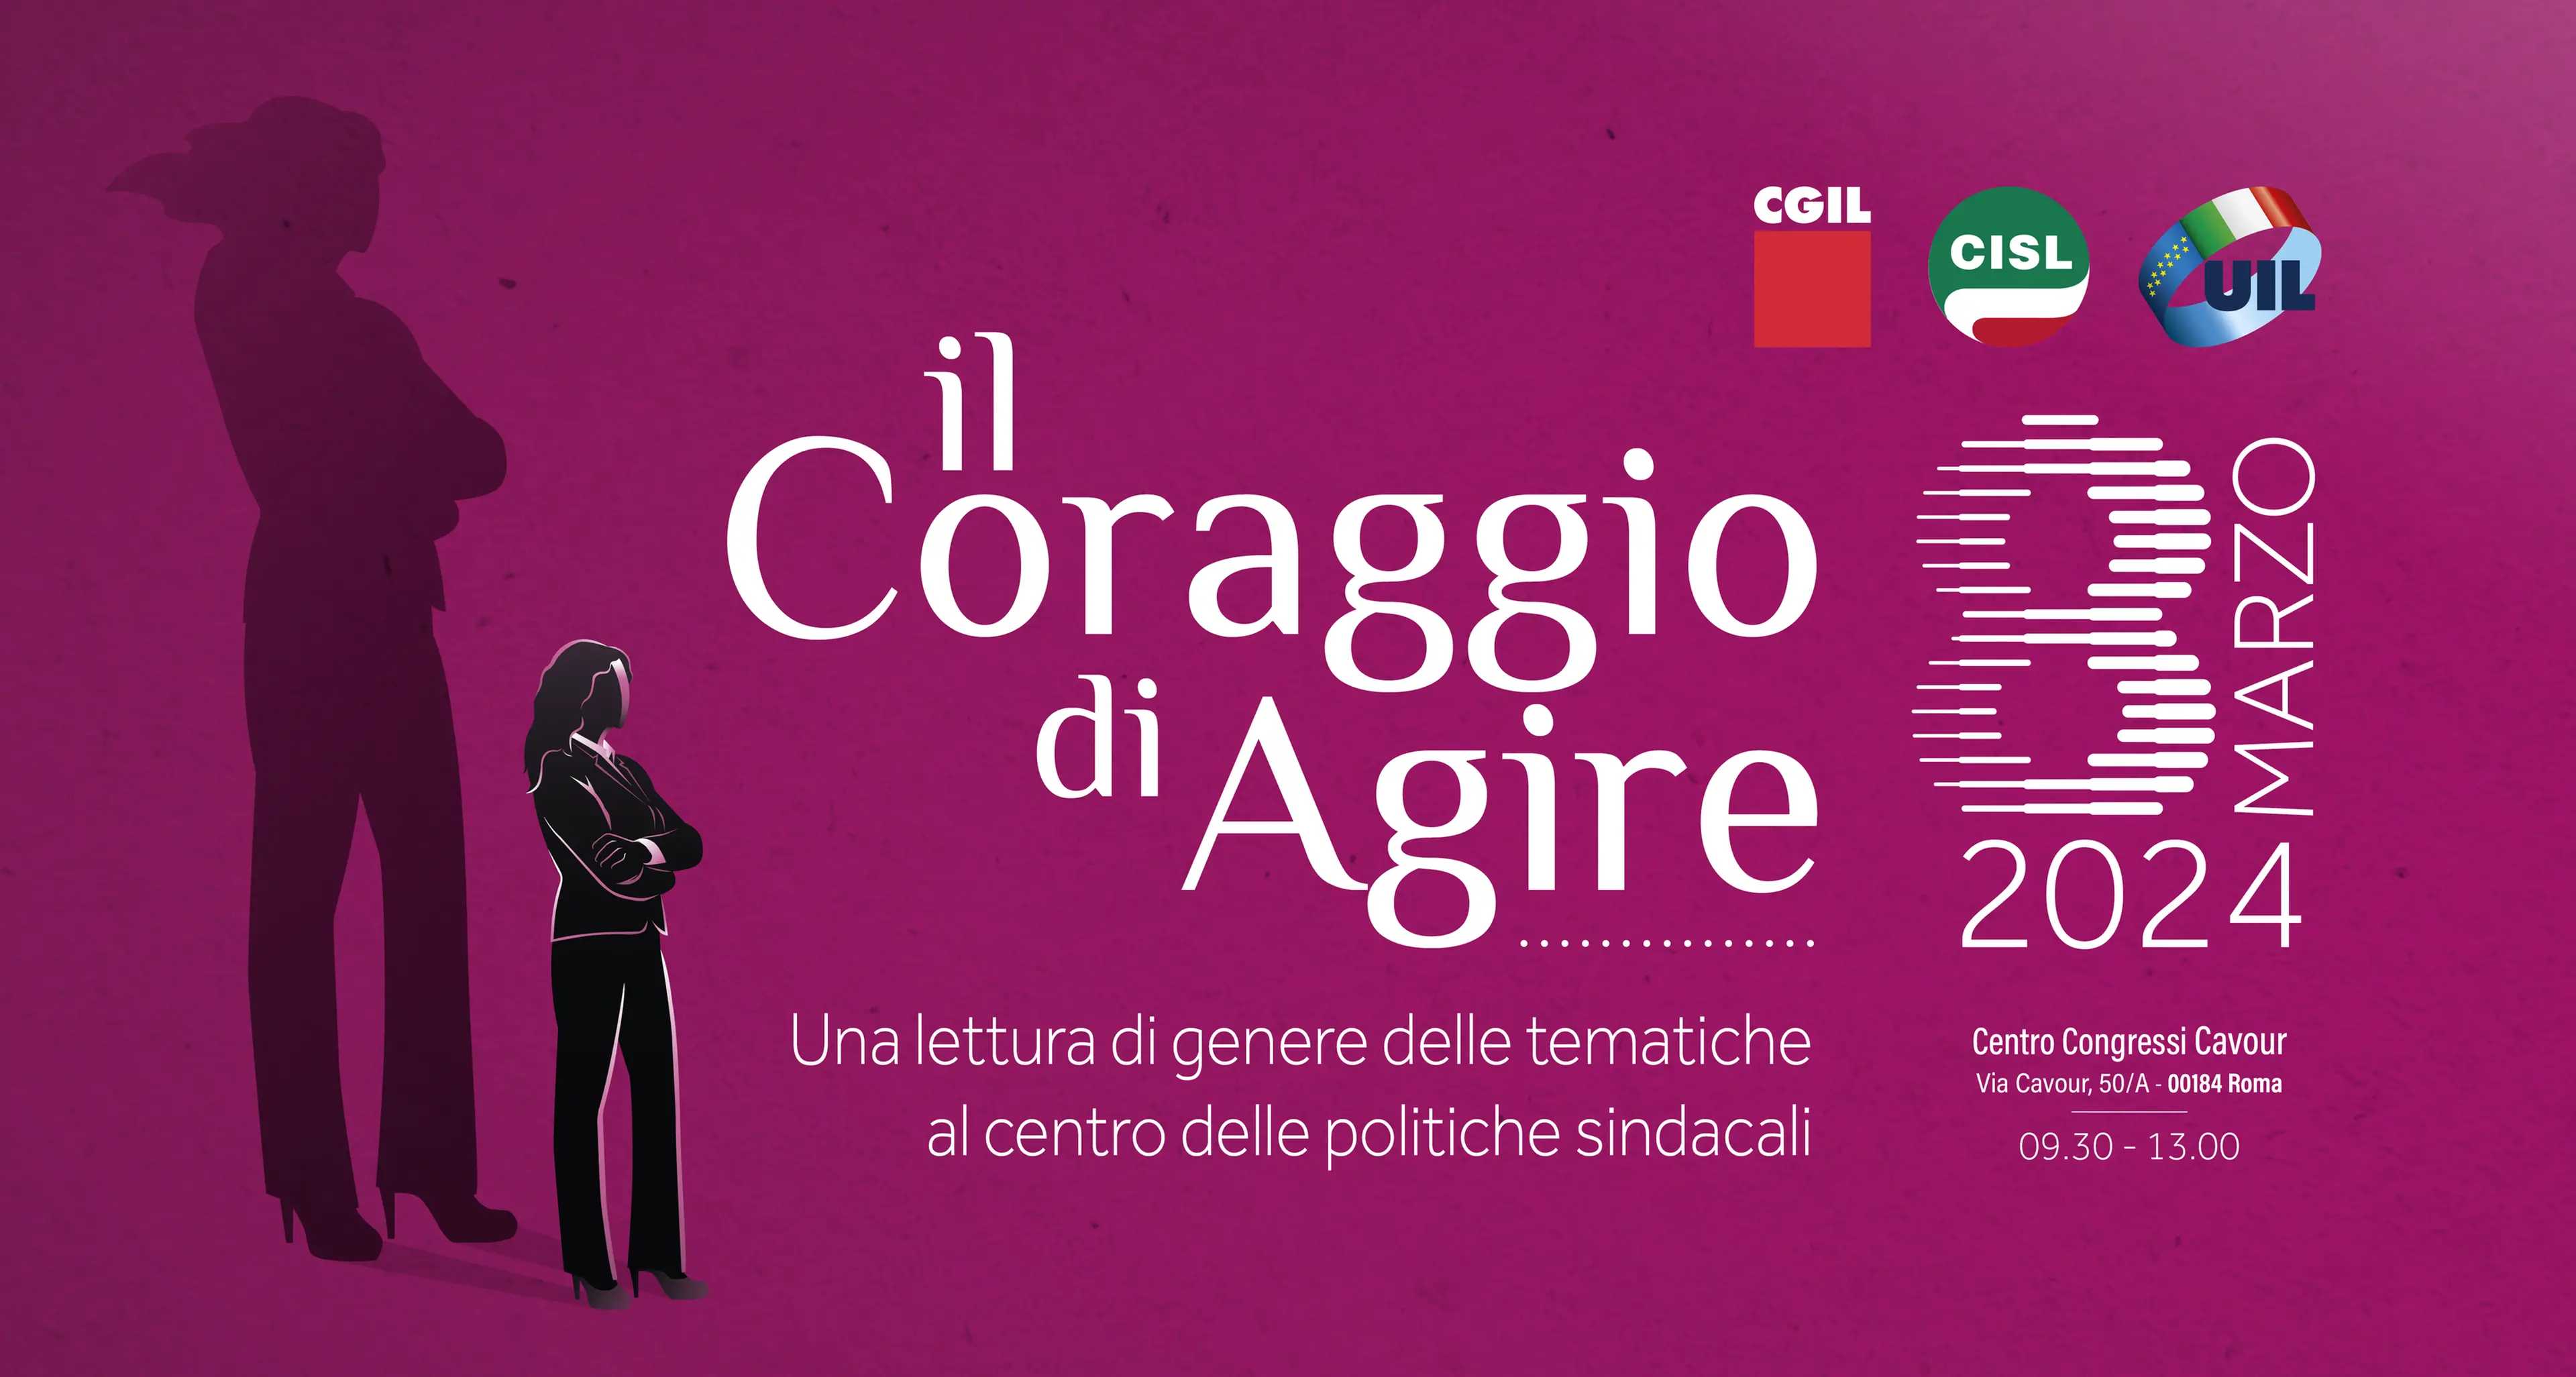 8 marzo: Cgil, Cisl e Uil, iniziativa nazionale a Roma 'Il Coraggio di Agire'